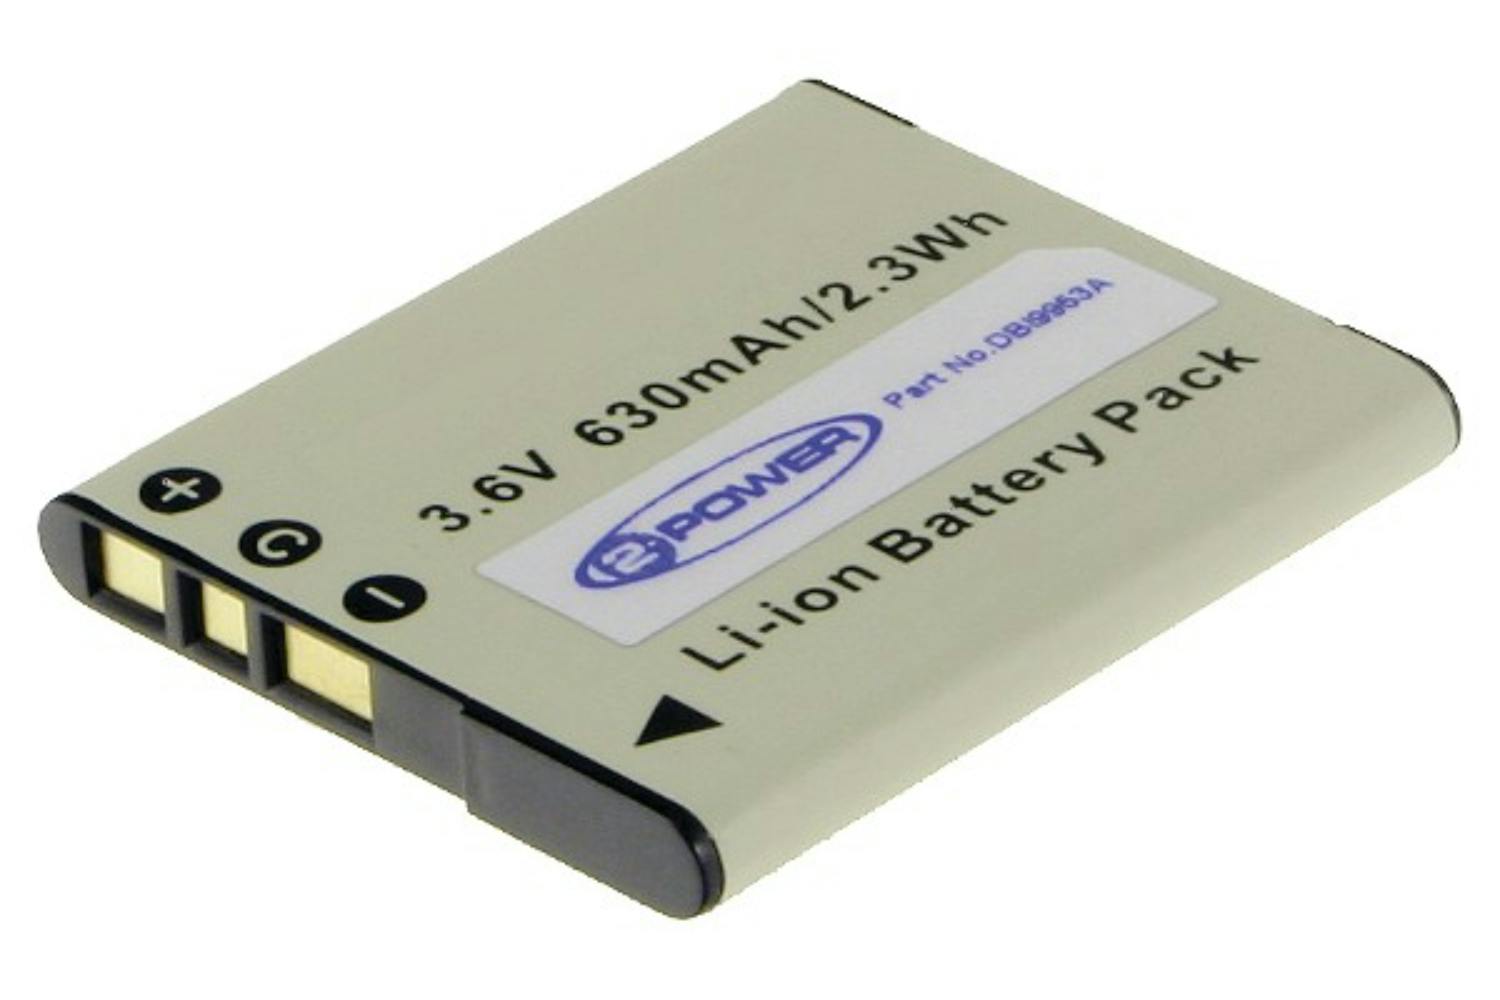 2-Power 630mAh Digital Camera Battery